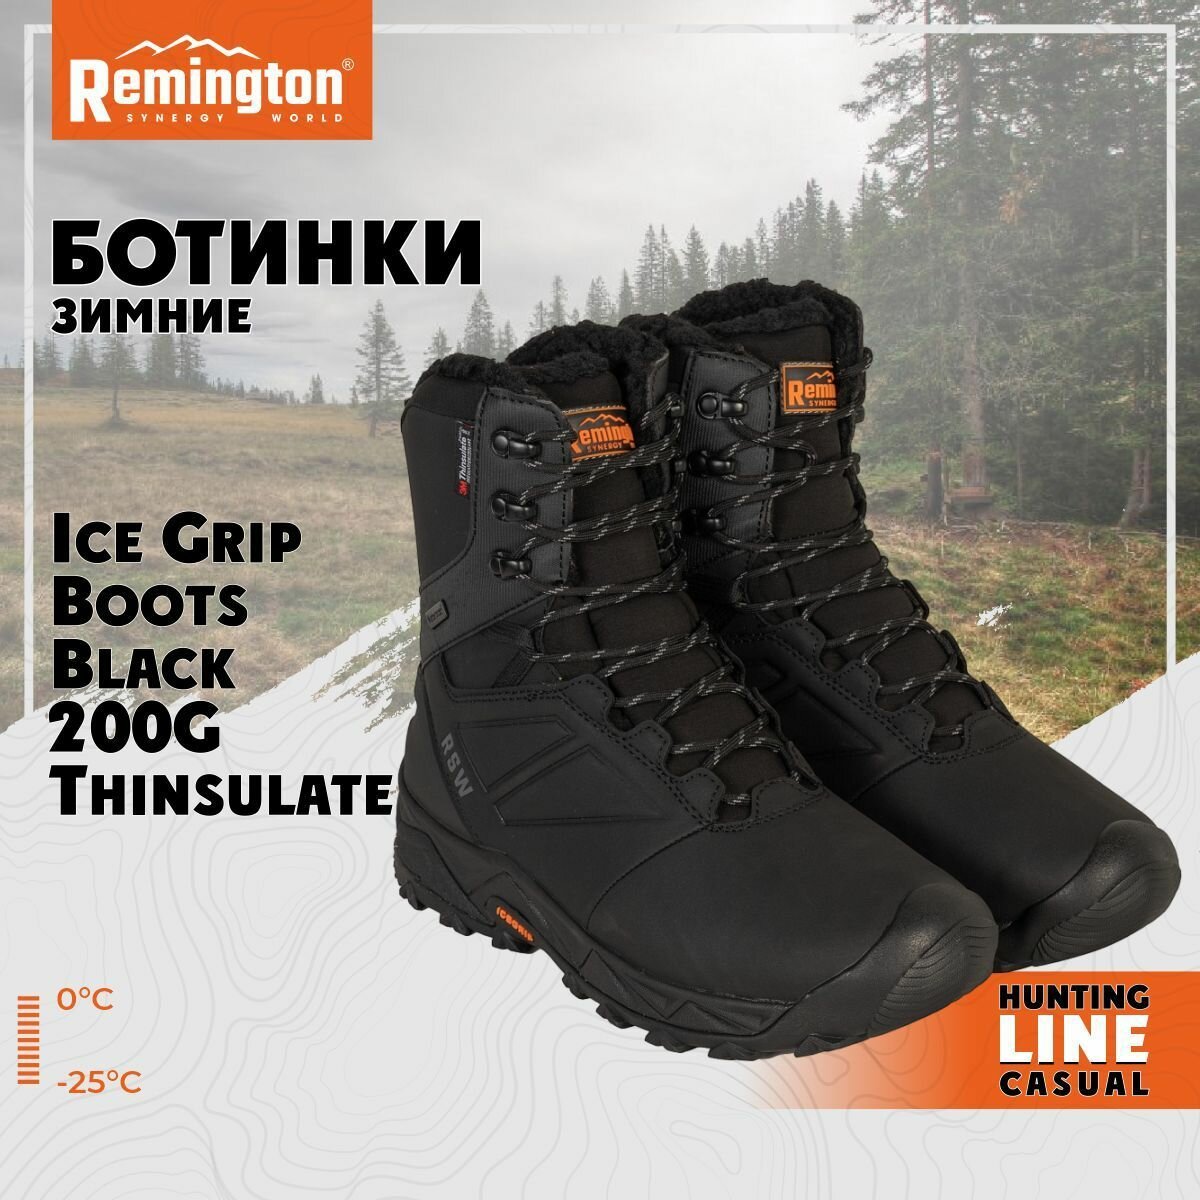 Ботинки Remington Ice Grip Boots Black 200g Thinsulate р. 46 RB2937-010